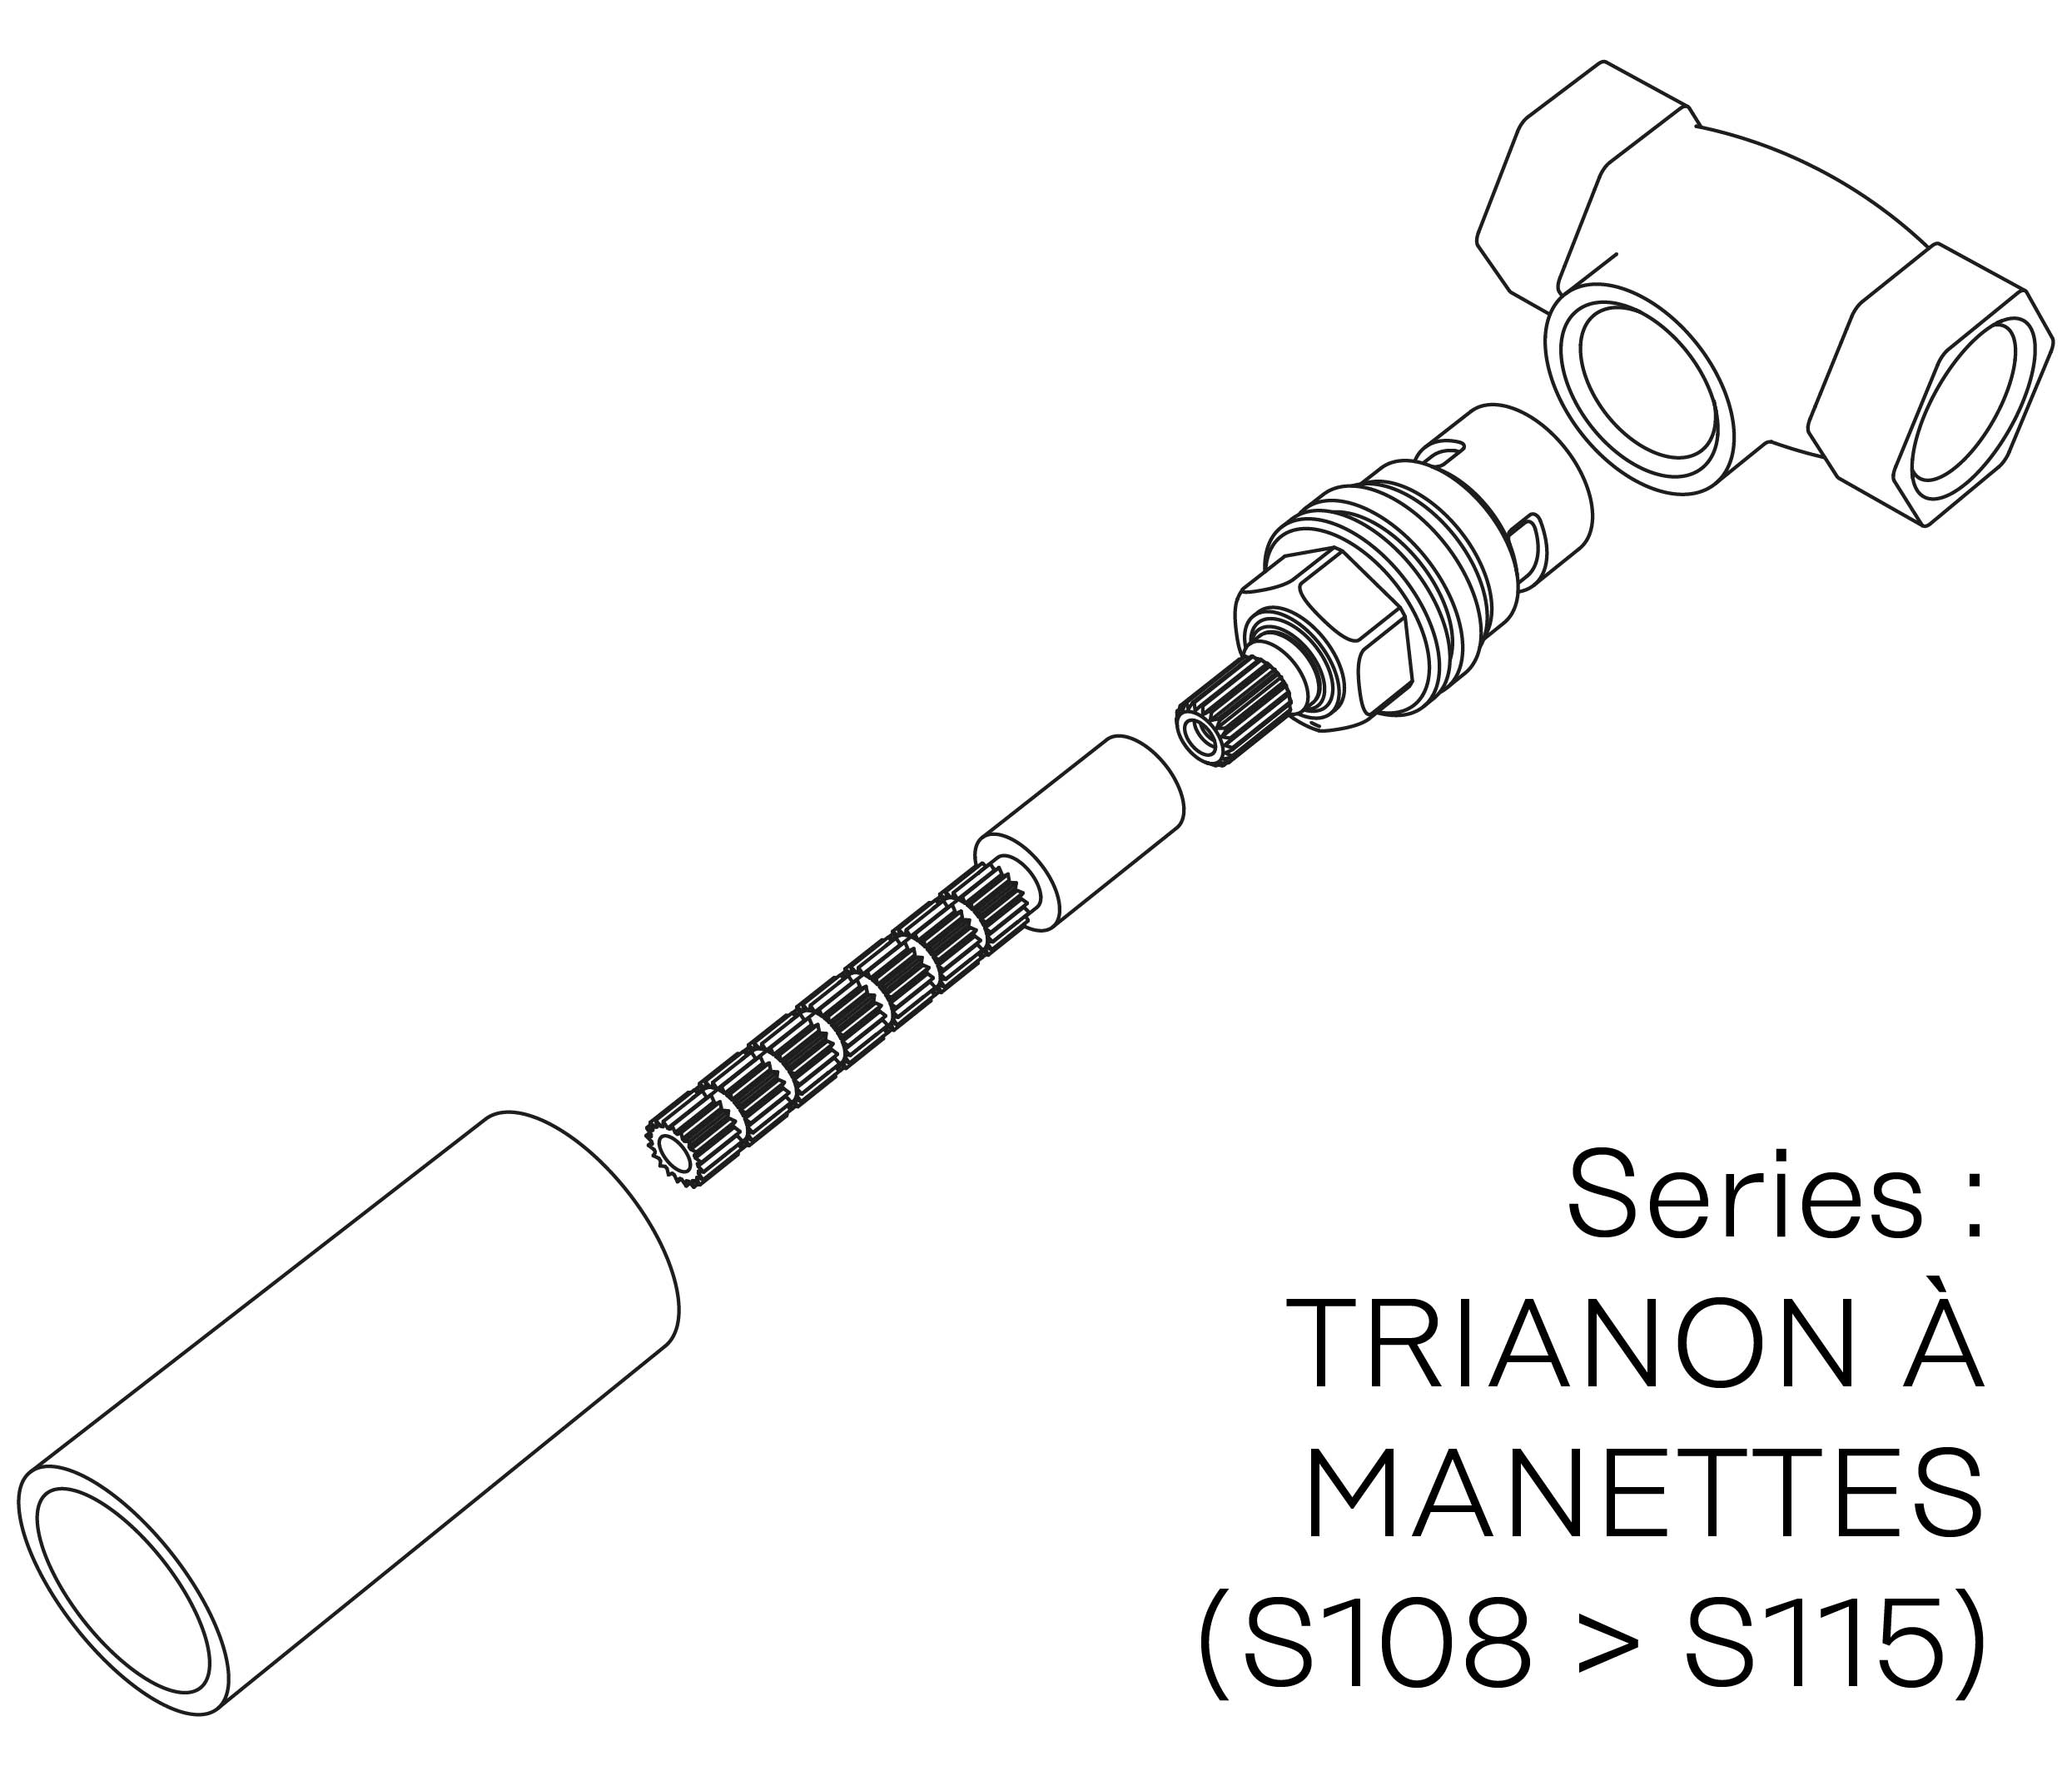 S00-26K29H Kit #6 for W-M valve 3/4″, 1/4 turn, Left